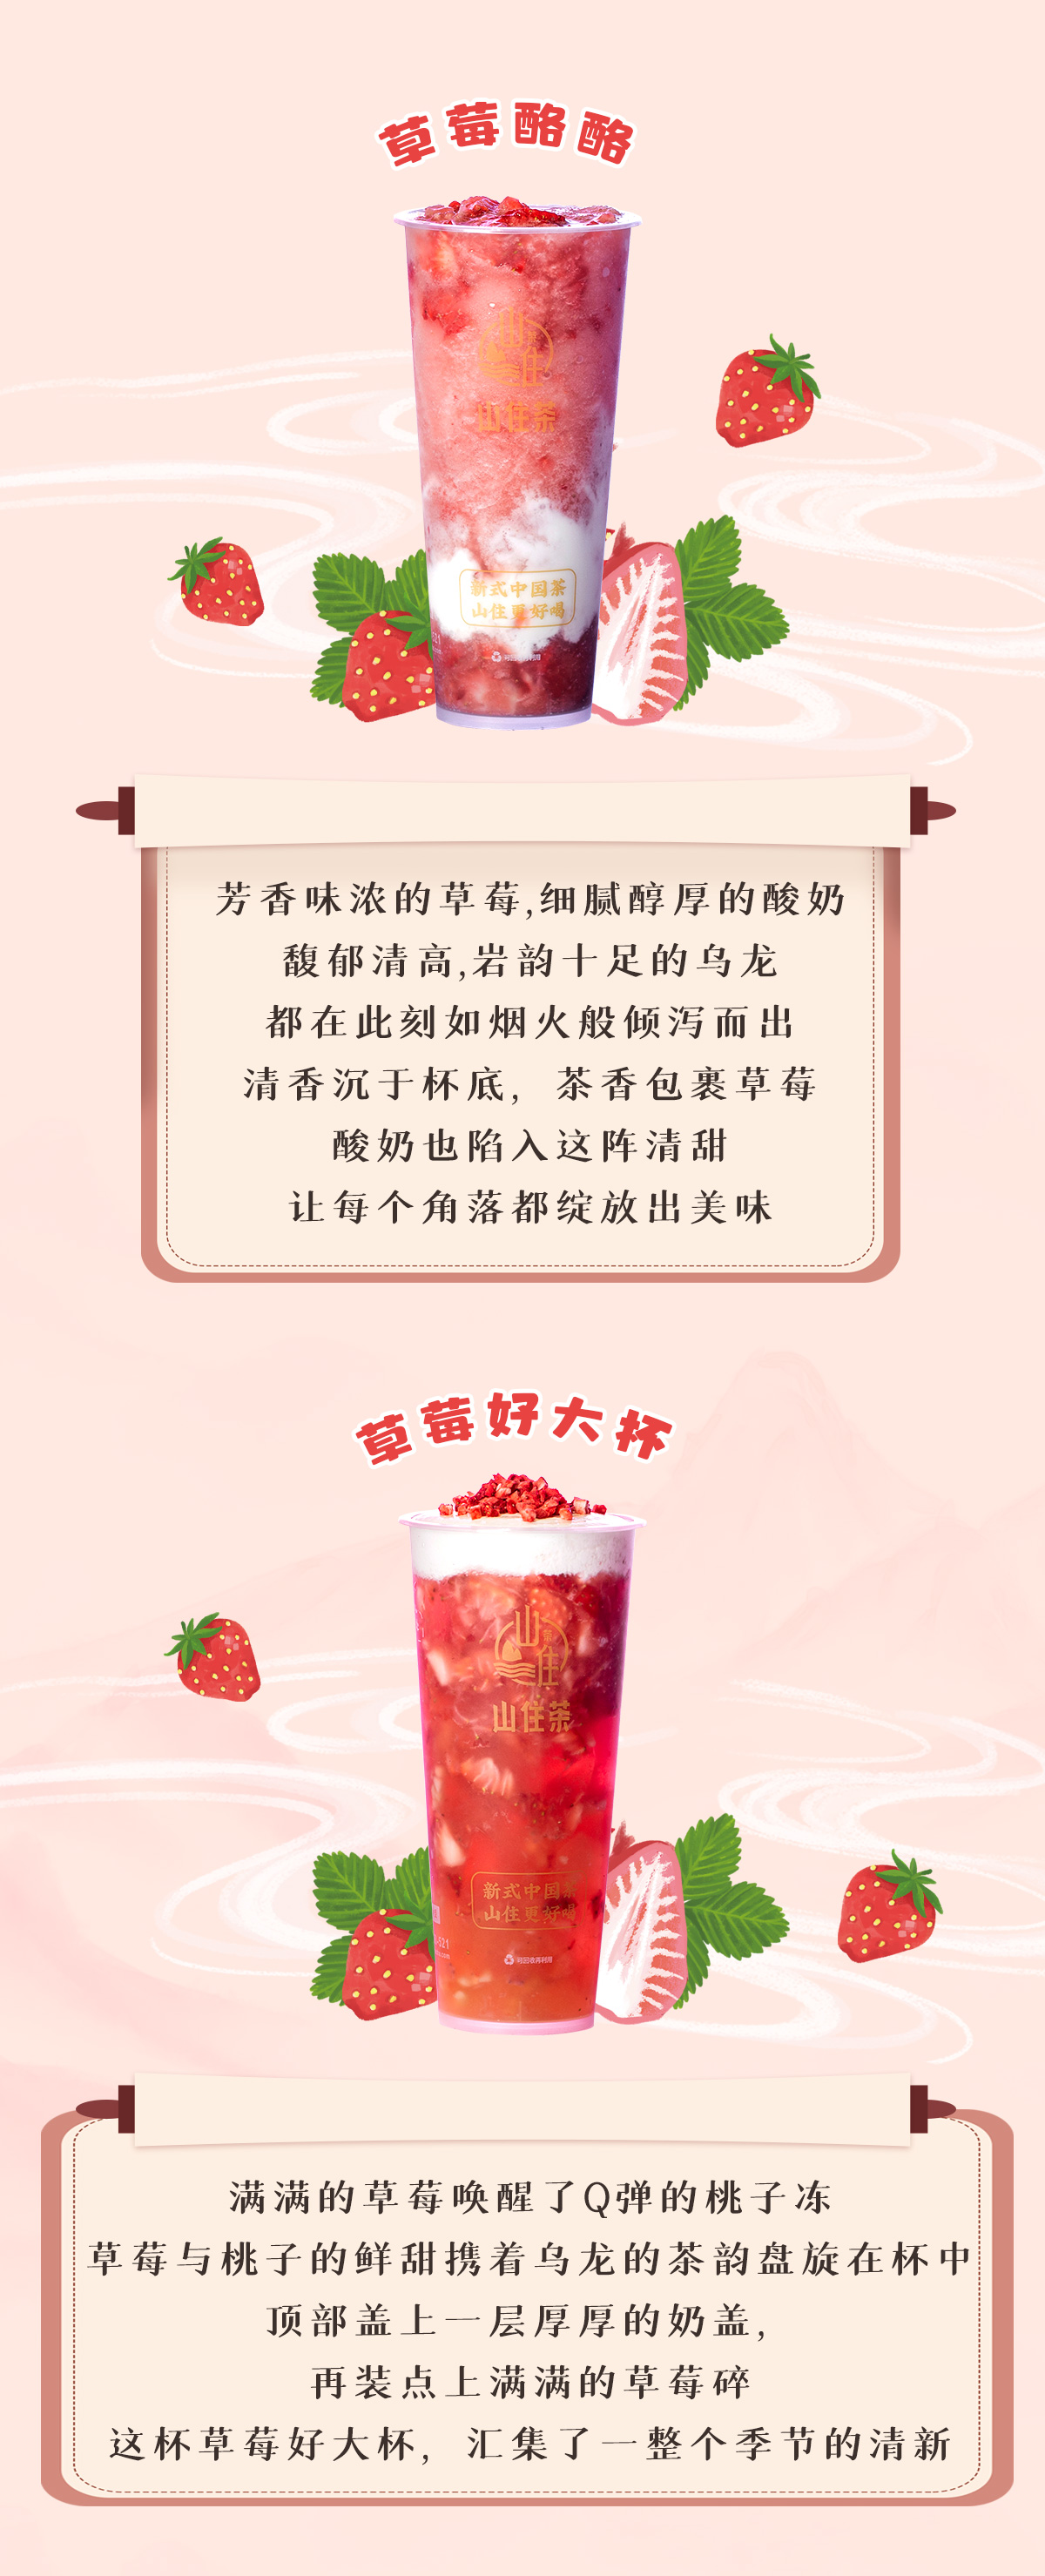 草莓推文_04.jpg